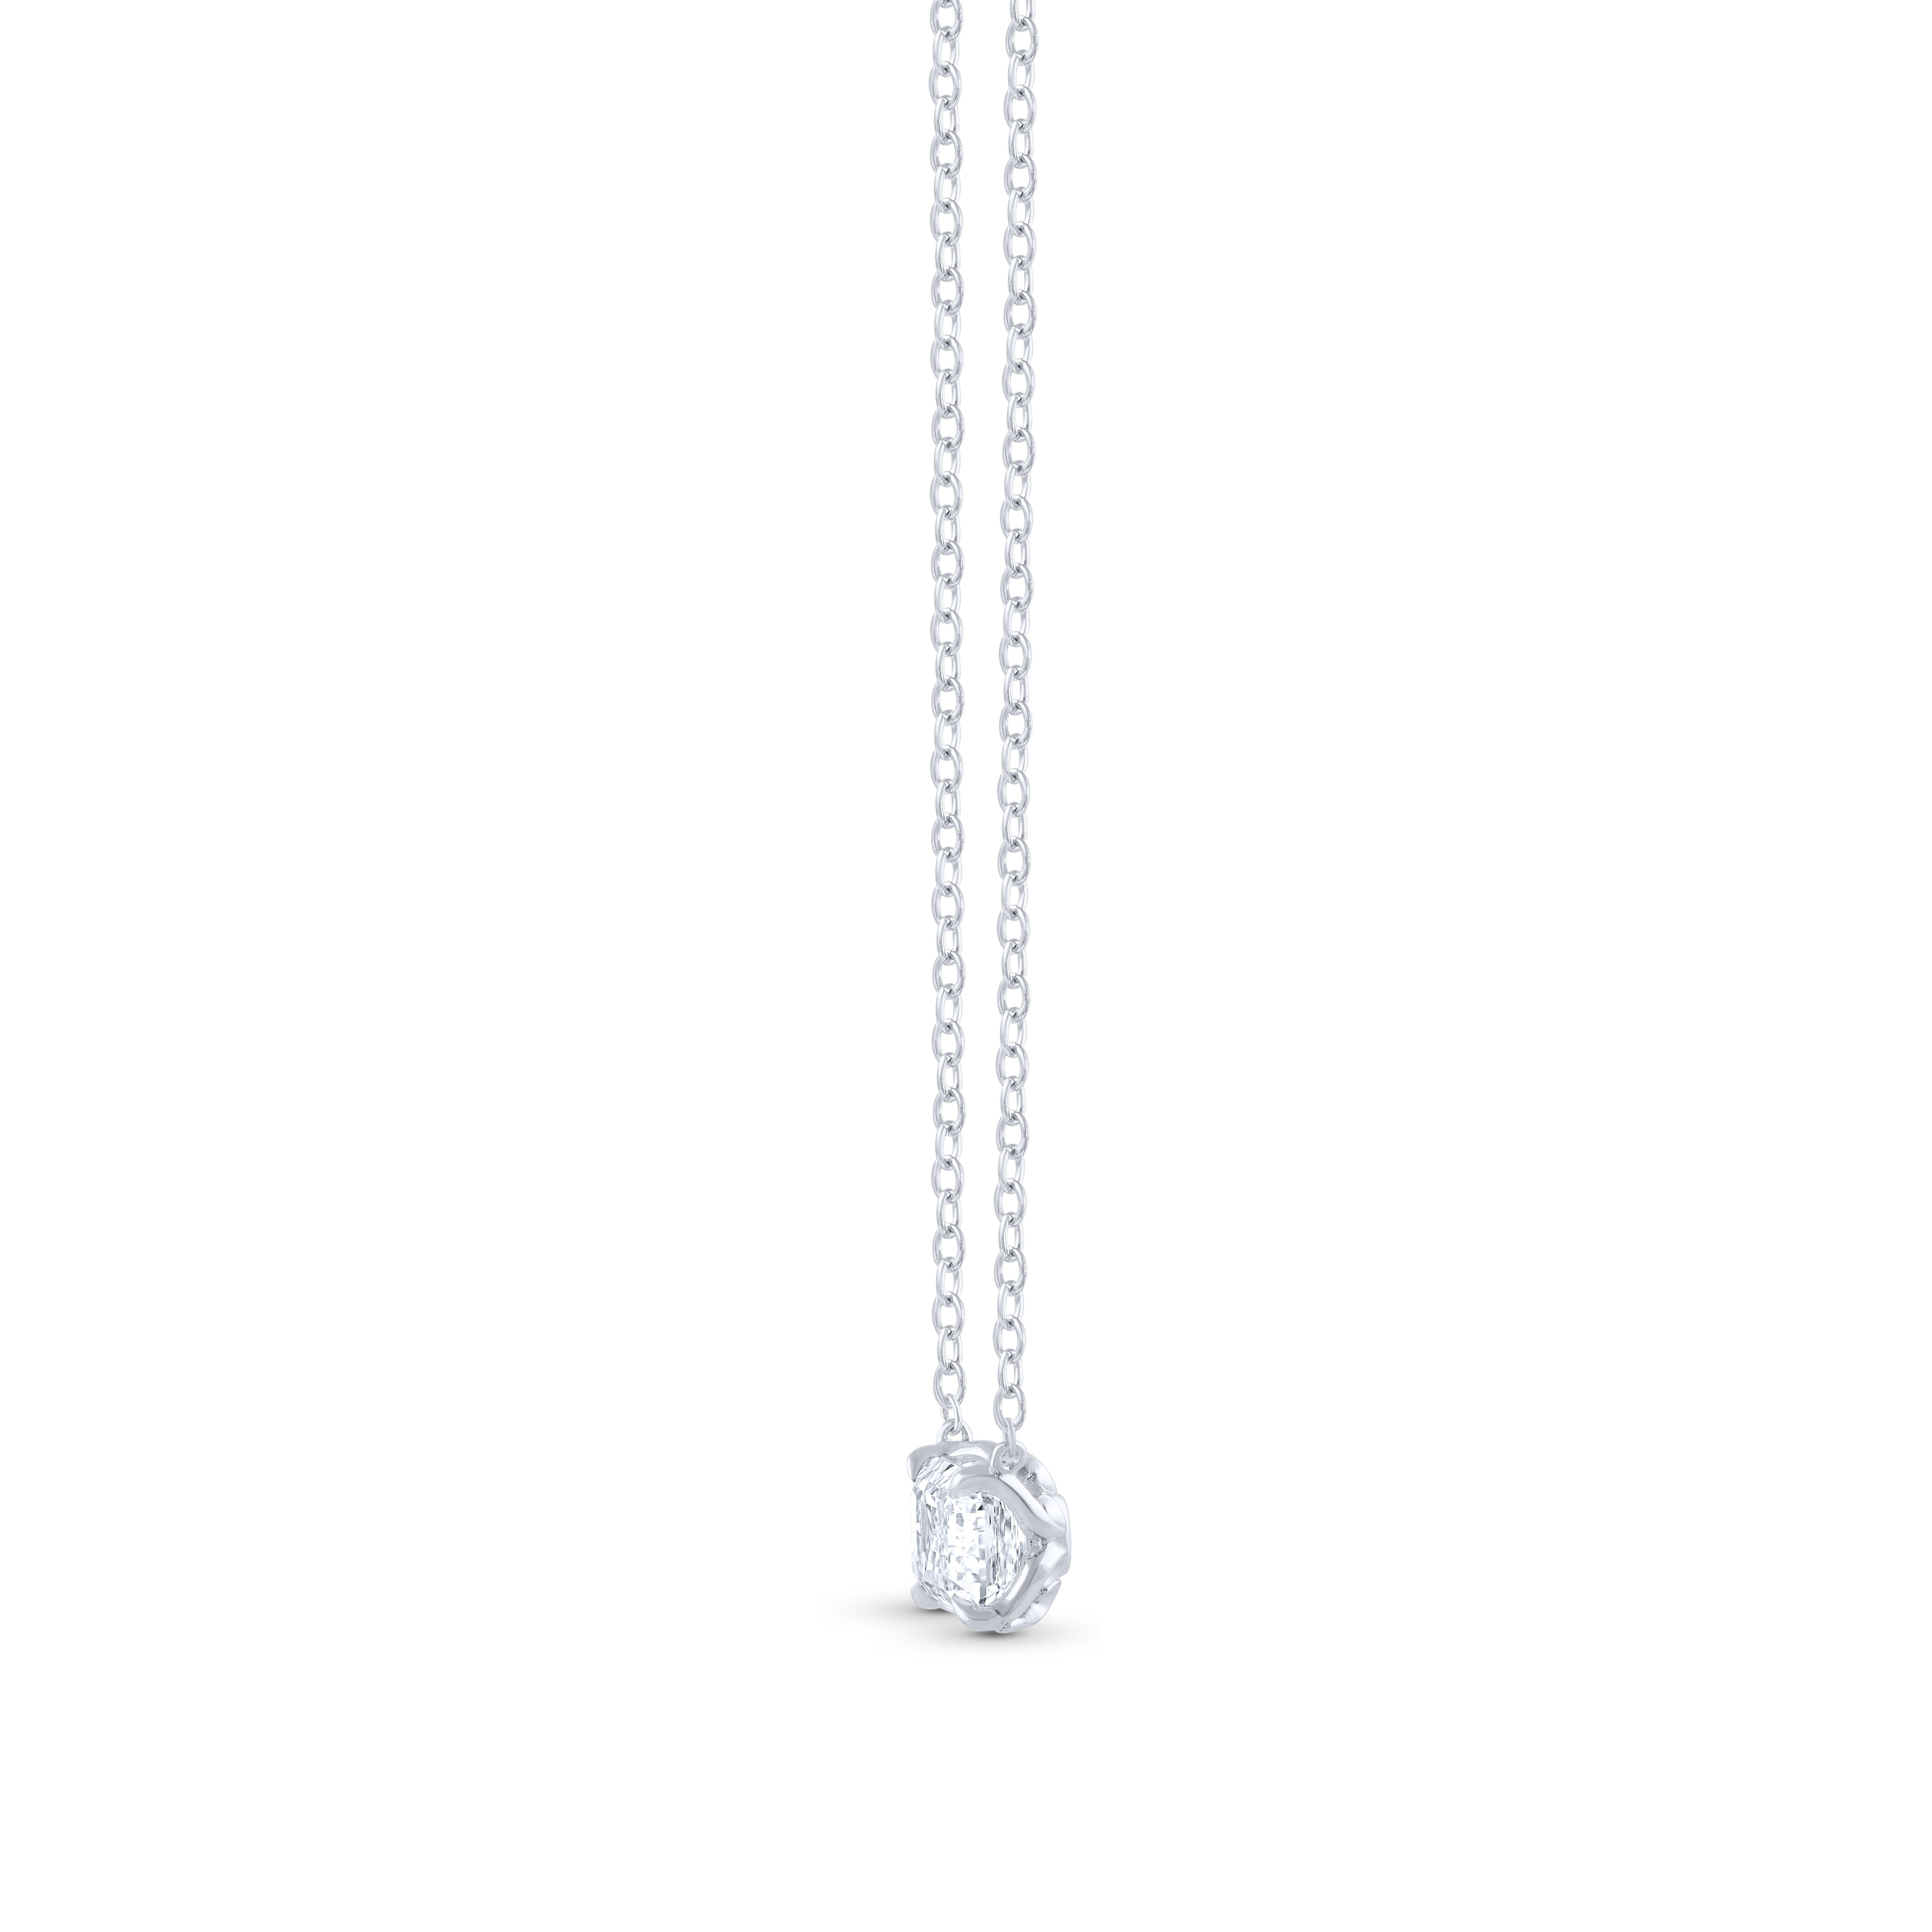  Ce collier à diamant solitaire est composé d'un diamant unique de 0,70 carat, de taille émeraude, certifié par le GIA, serti en griffe et fabriqué en or blanc 18 carats. Cet élégant collier comprend une chaîne câblée de 18 pouces avec une extension